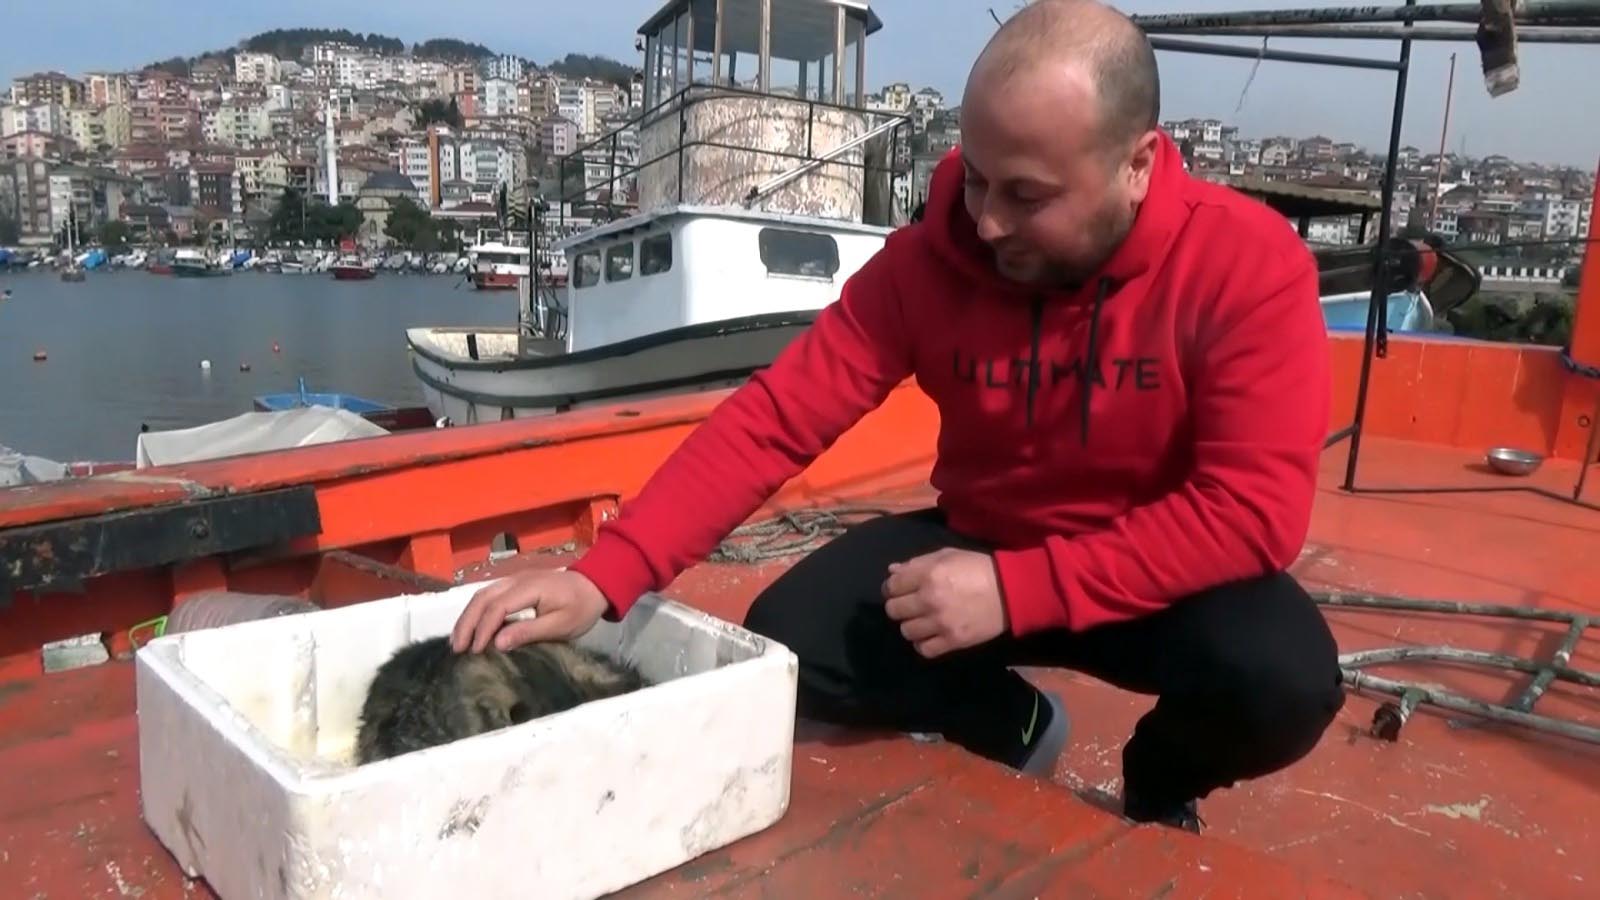 093518649 kaybolan kedisini tekirdaga giden teknede buldu denizin ortasinda bulusup teslim aldi 1